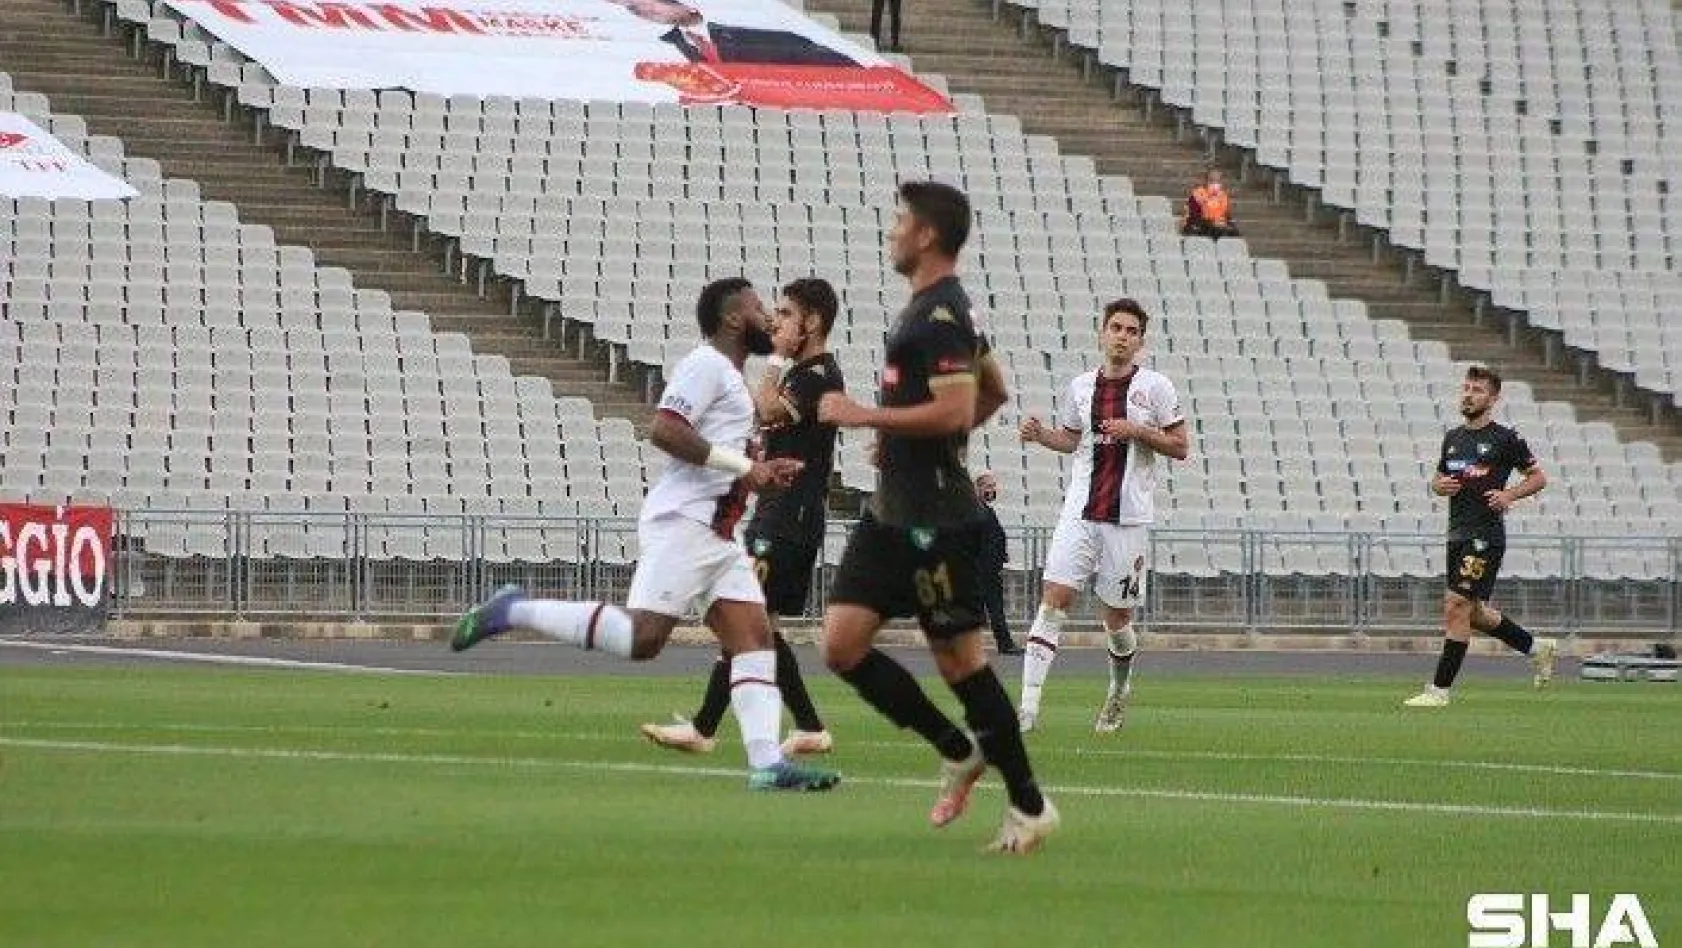 Süper Lig: Fatih Karagümrük: 5 - Denizlispor: 1 (Maç sonucu)